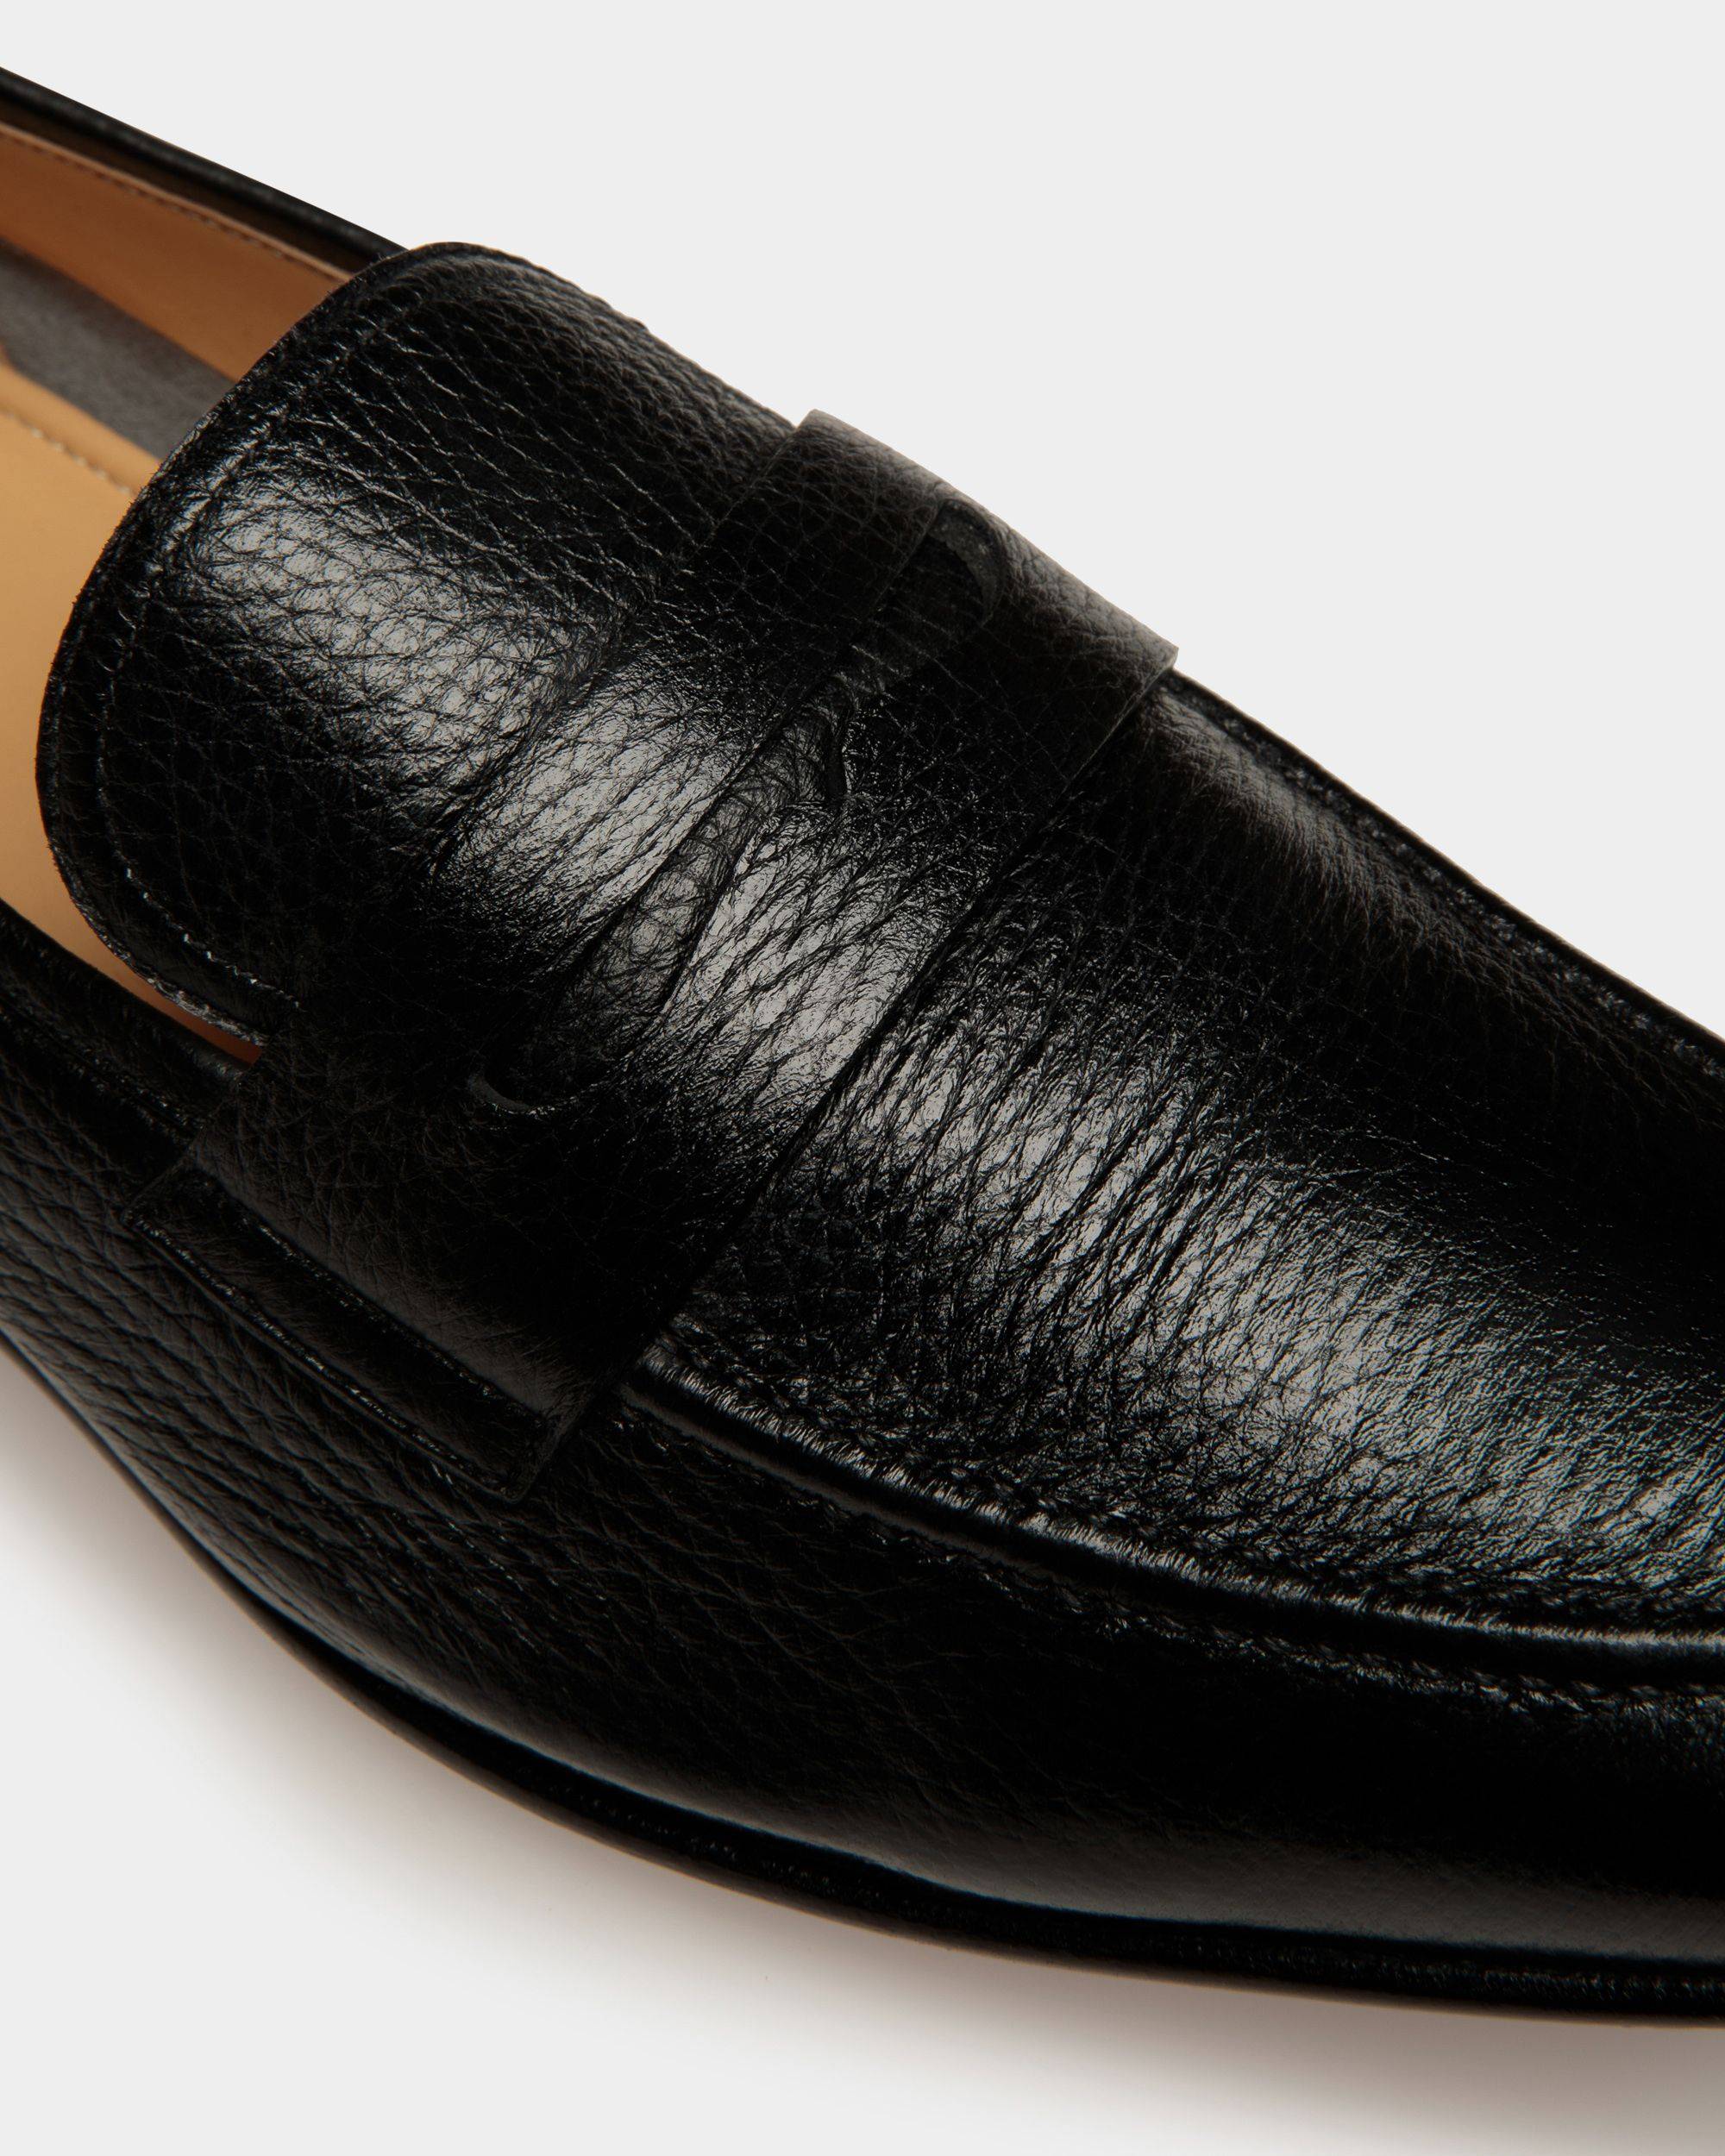 Saix | Loafer für Herren | Schwarzes Leder | Bally | Still Life Detail